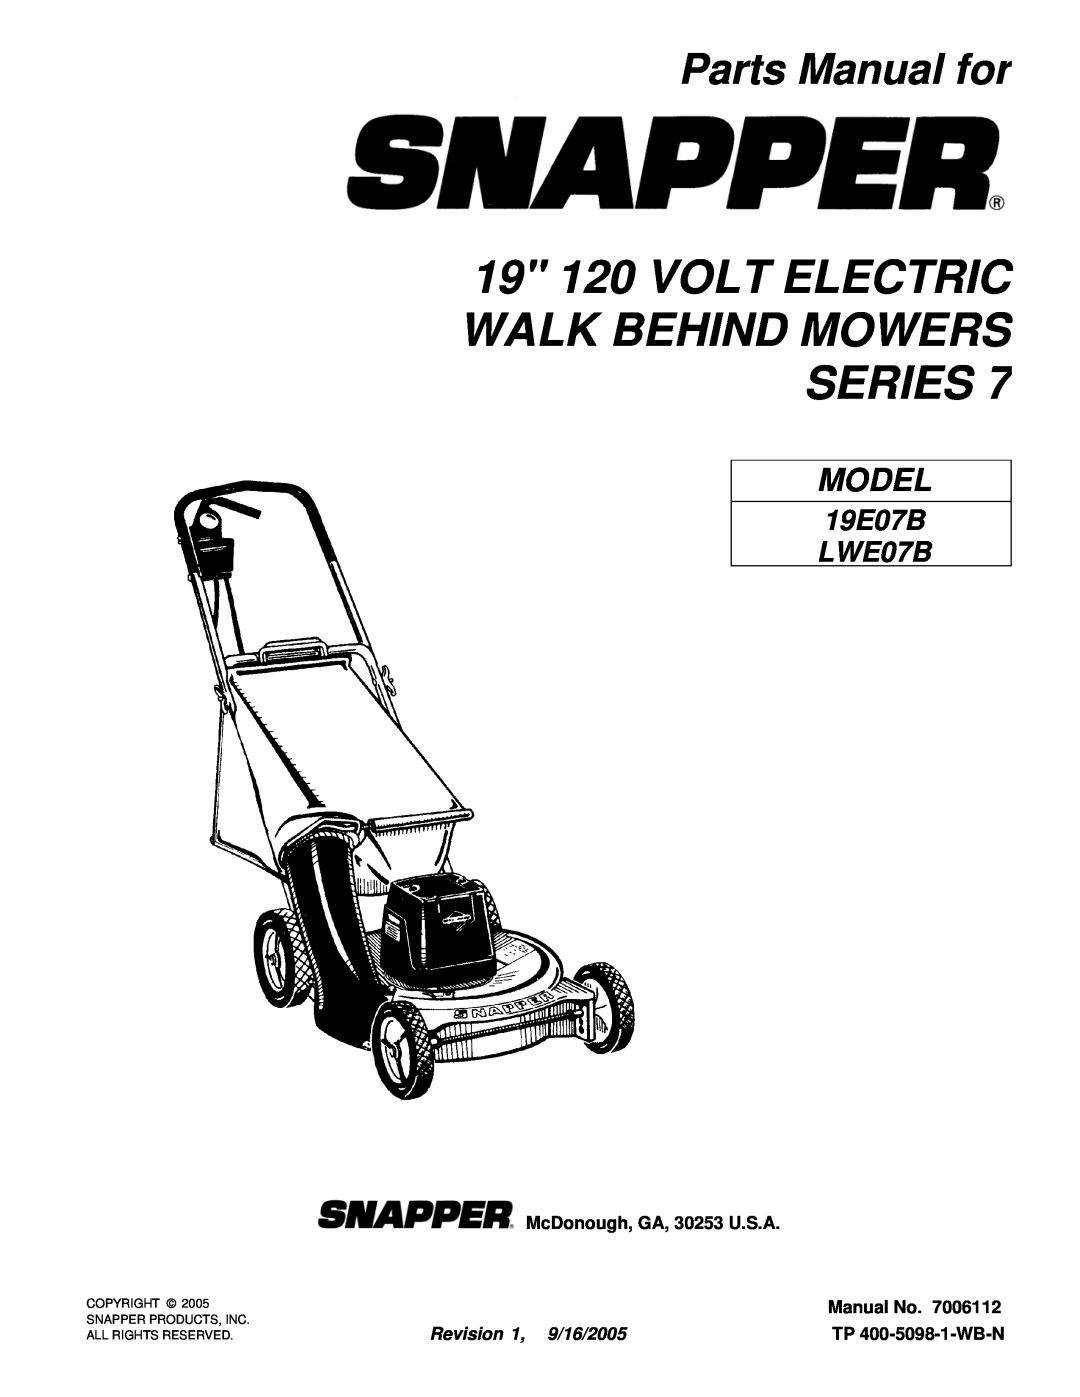 Snapper 19E07B manual 19 120 VOLT ELECTRIC WALK BEHIND MOWERS SERIES, Parts Manual for, McDonough, GA, 30253 U.S.A, Model 